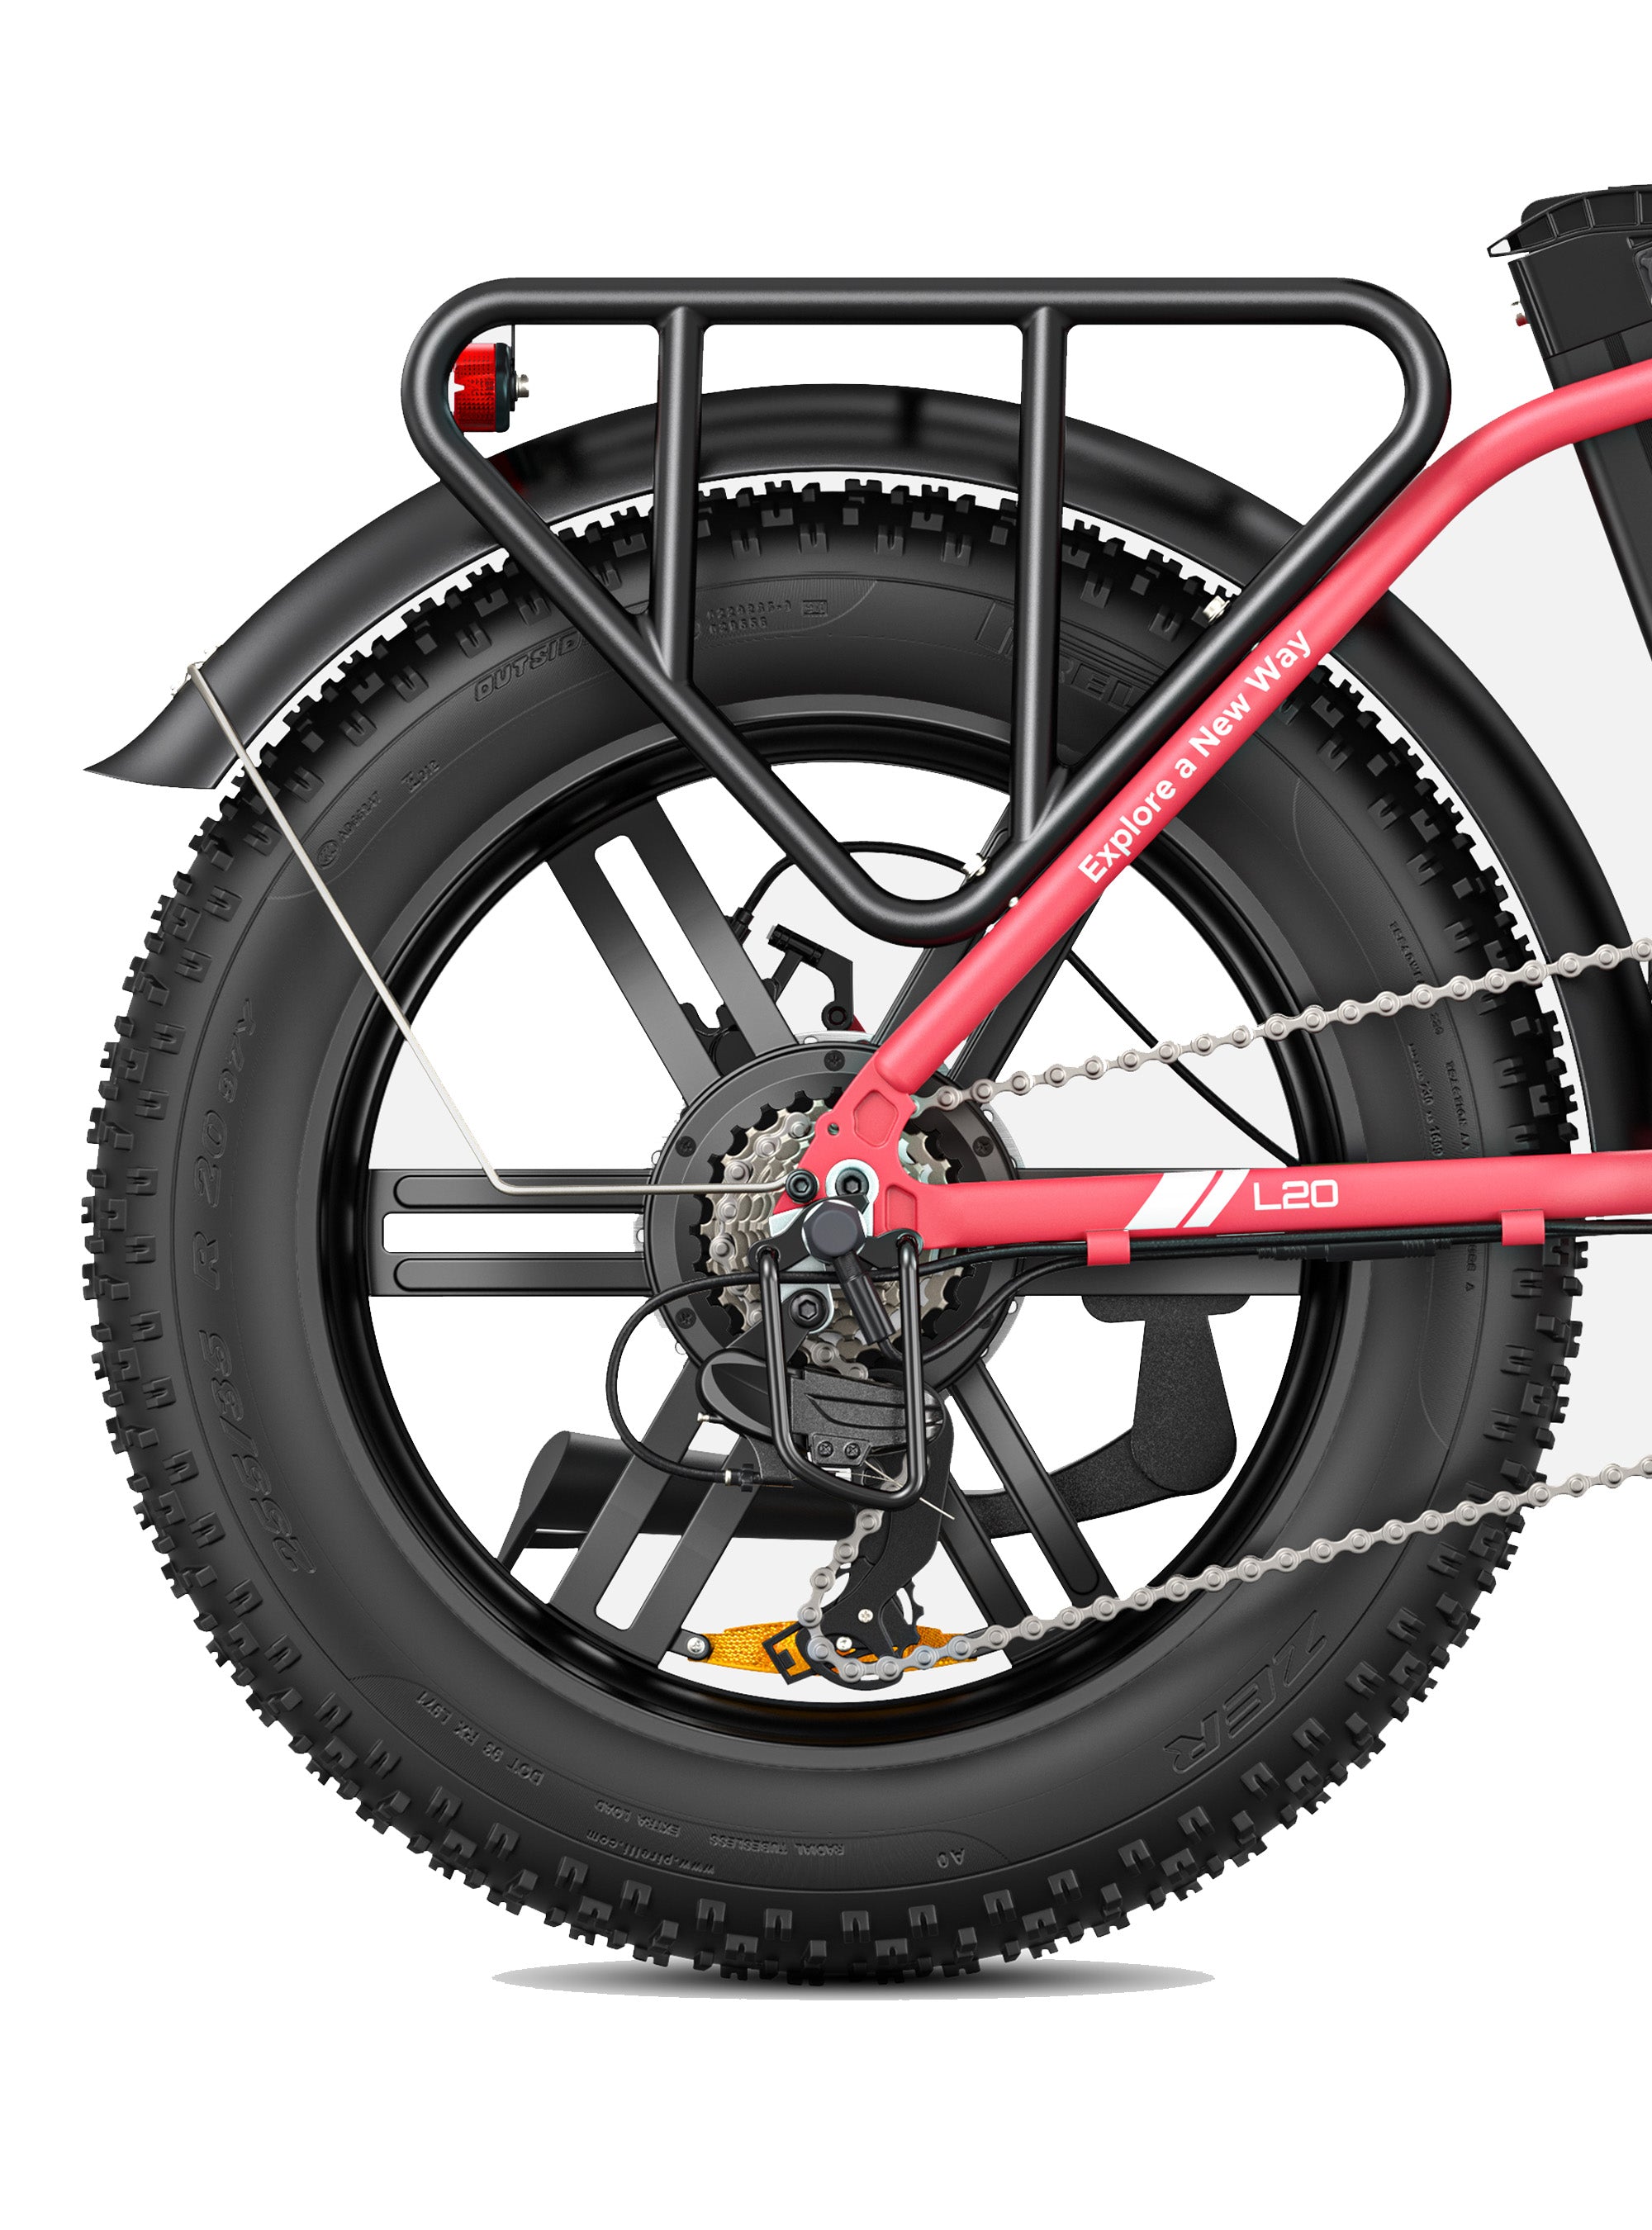 Engwe L20 : vélo électrique Step-Thru Fat Tire pour les longues distances